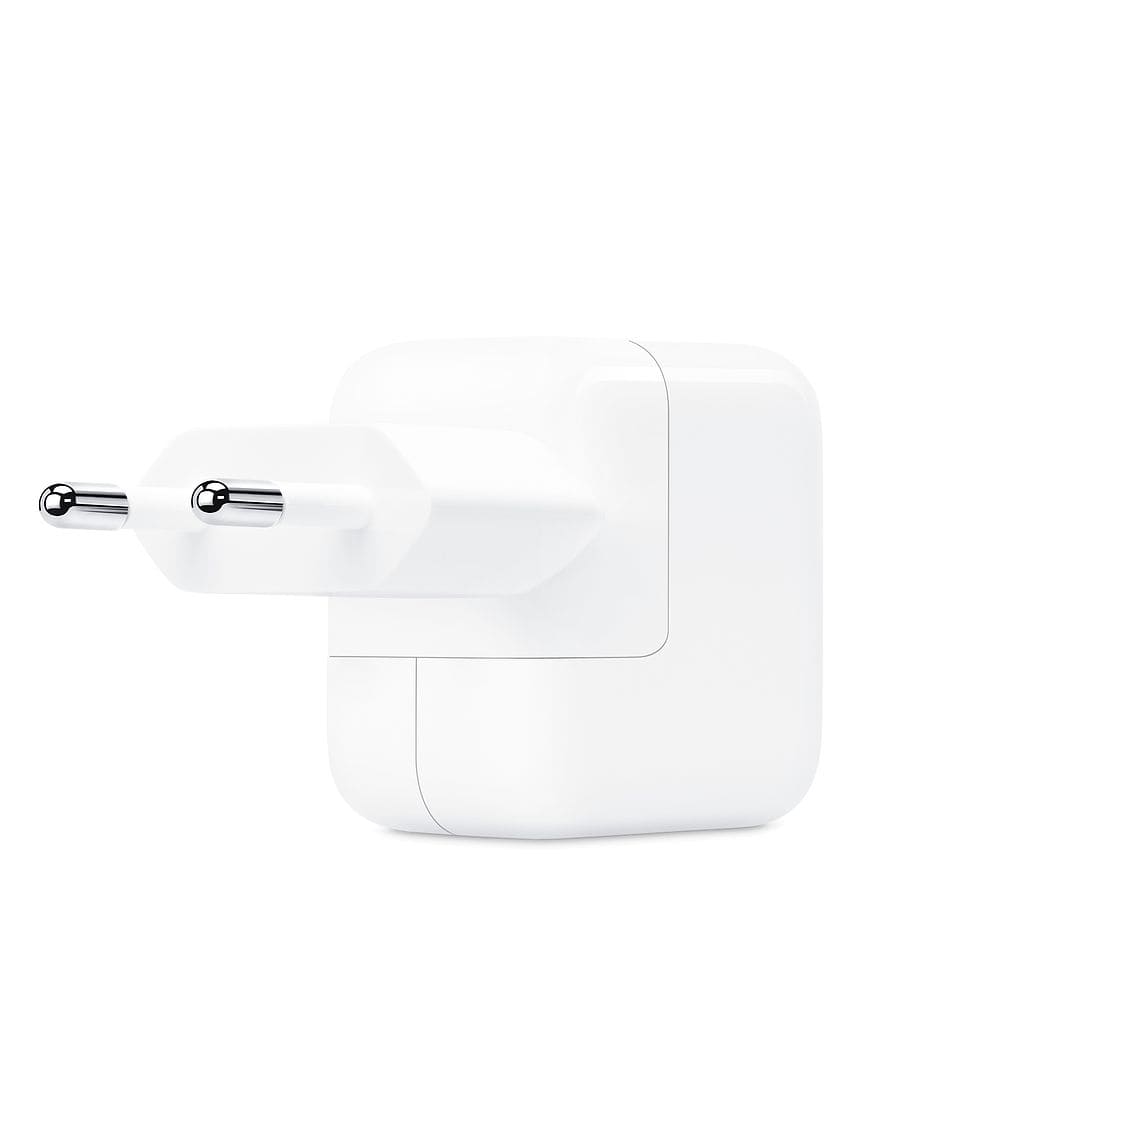 Фото — Зарядное устройство Apple USB мощностью 12 Вт